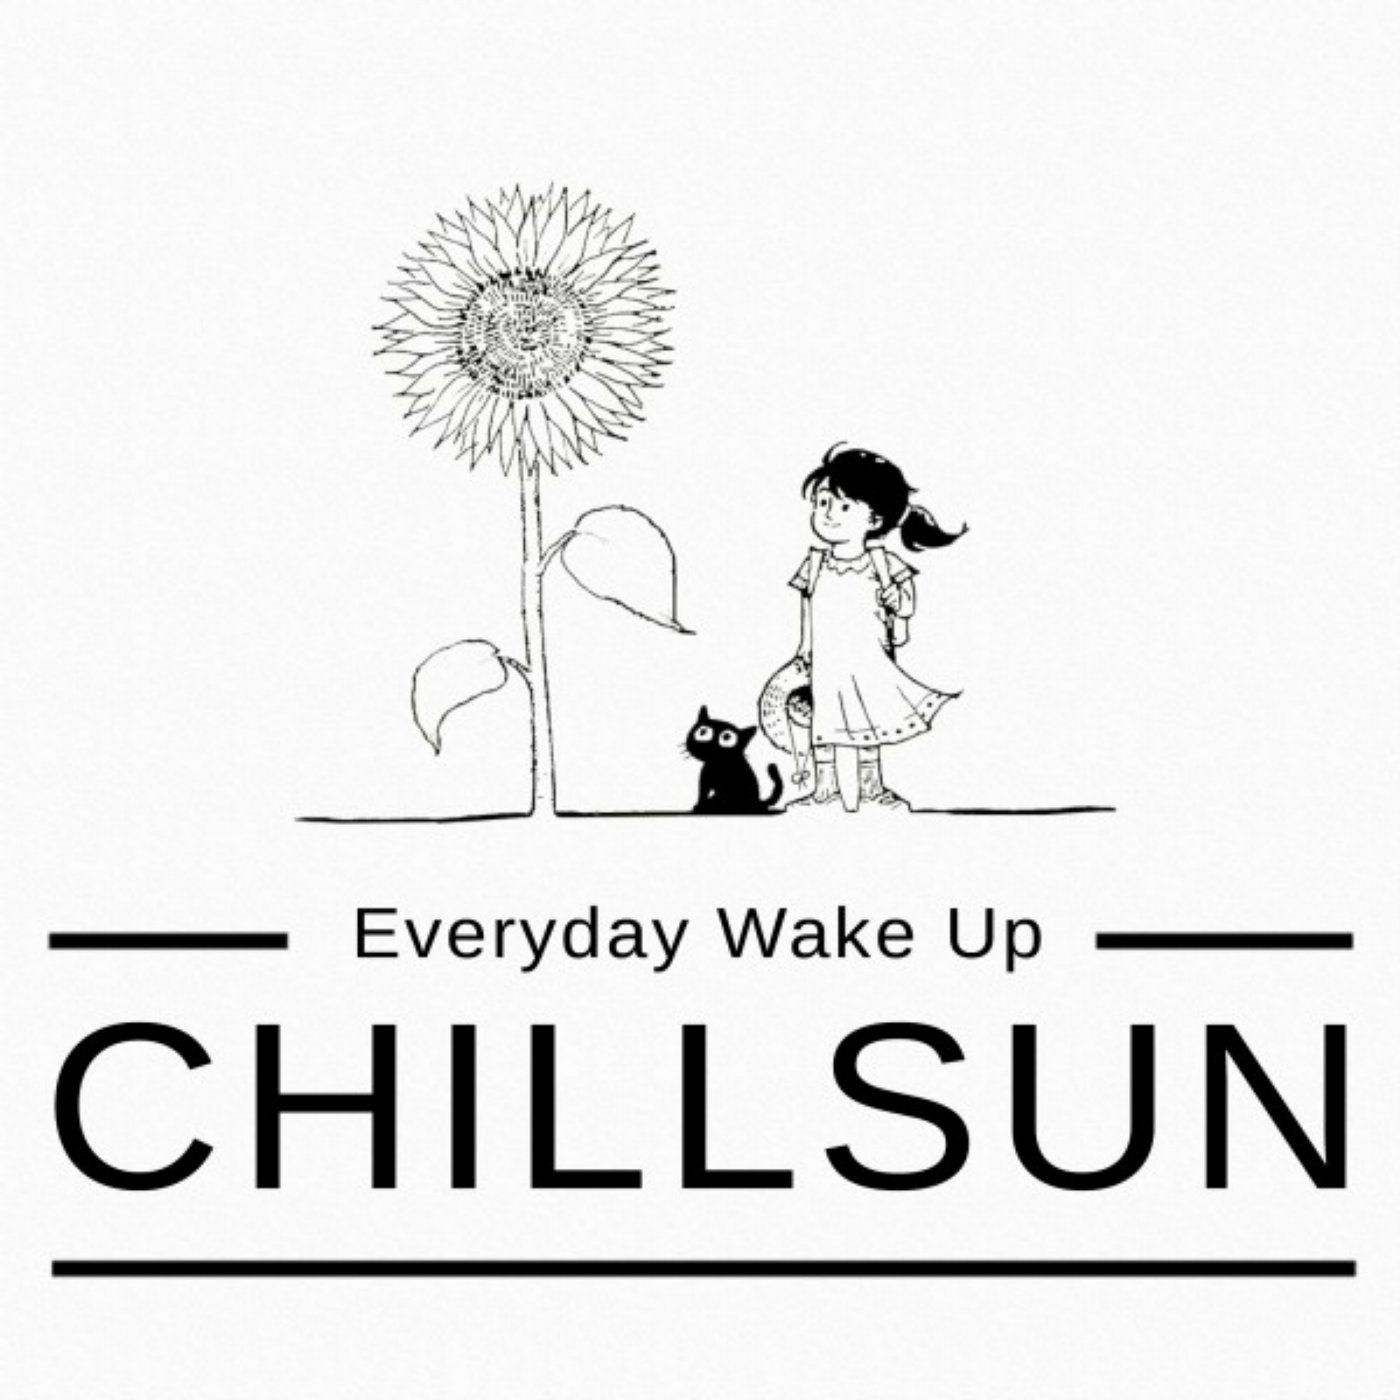 Chillsun (Everyday Wake Up)